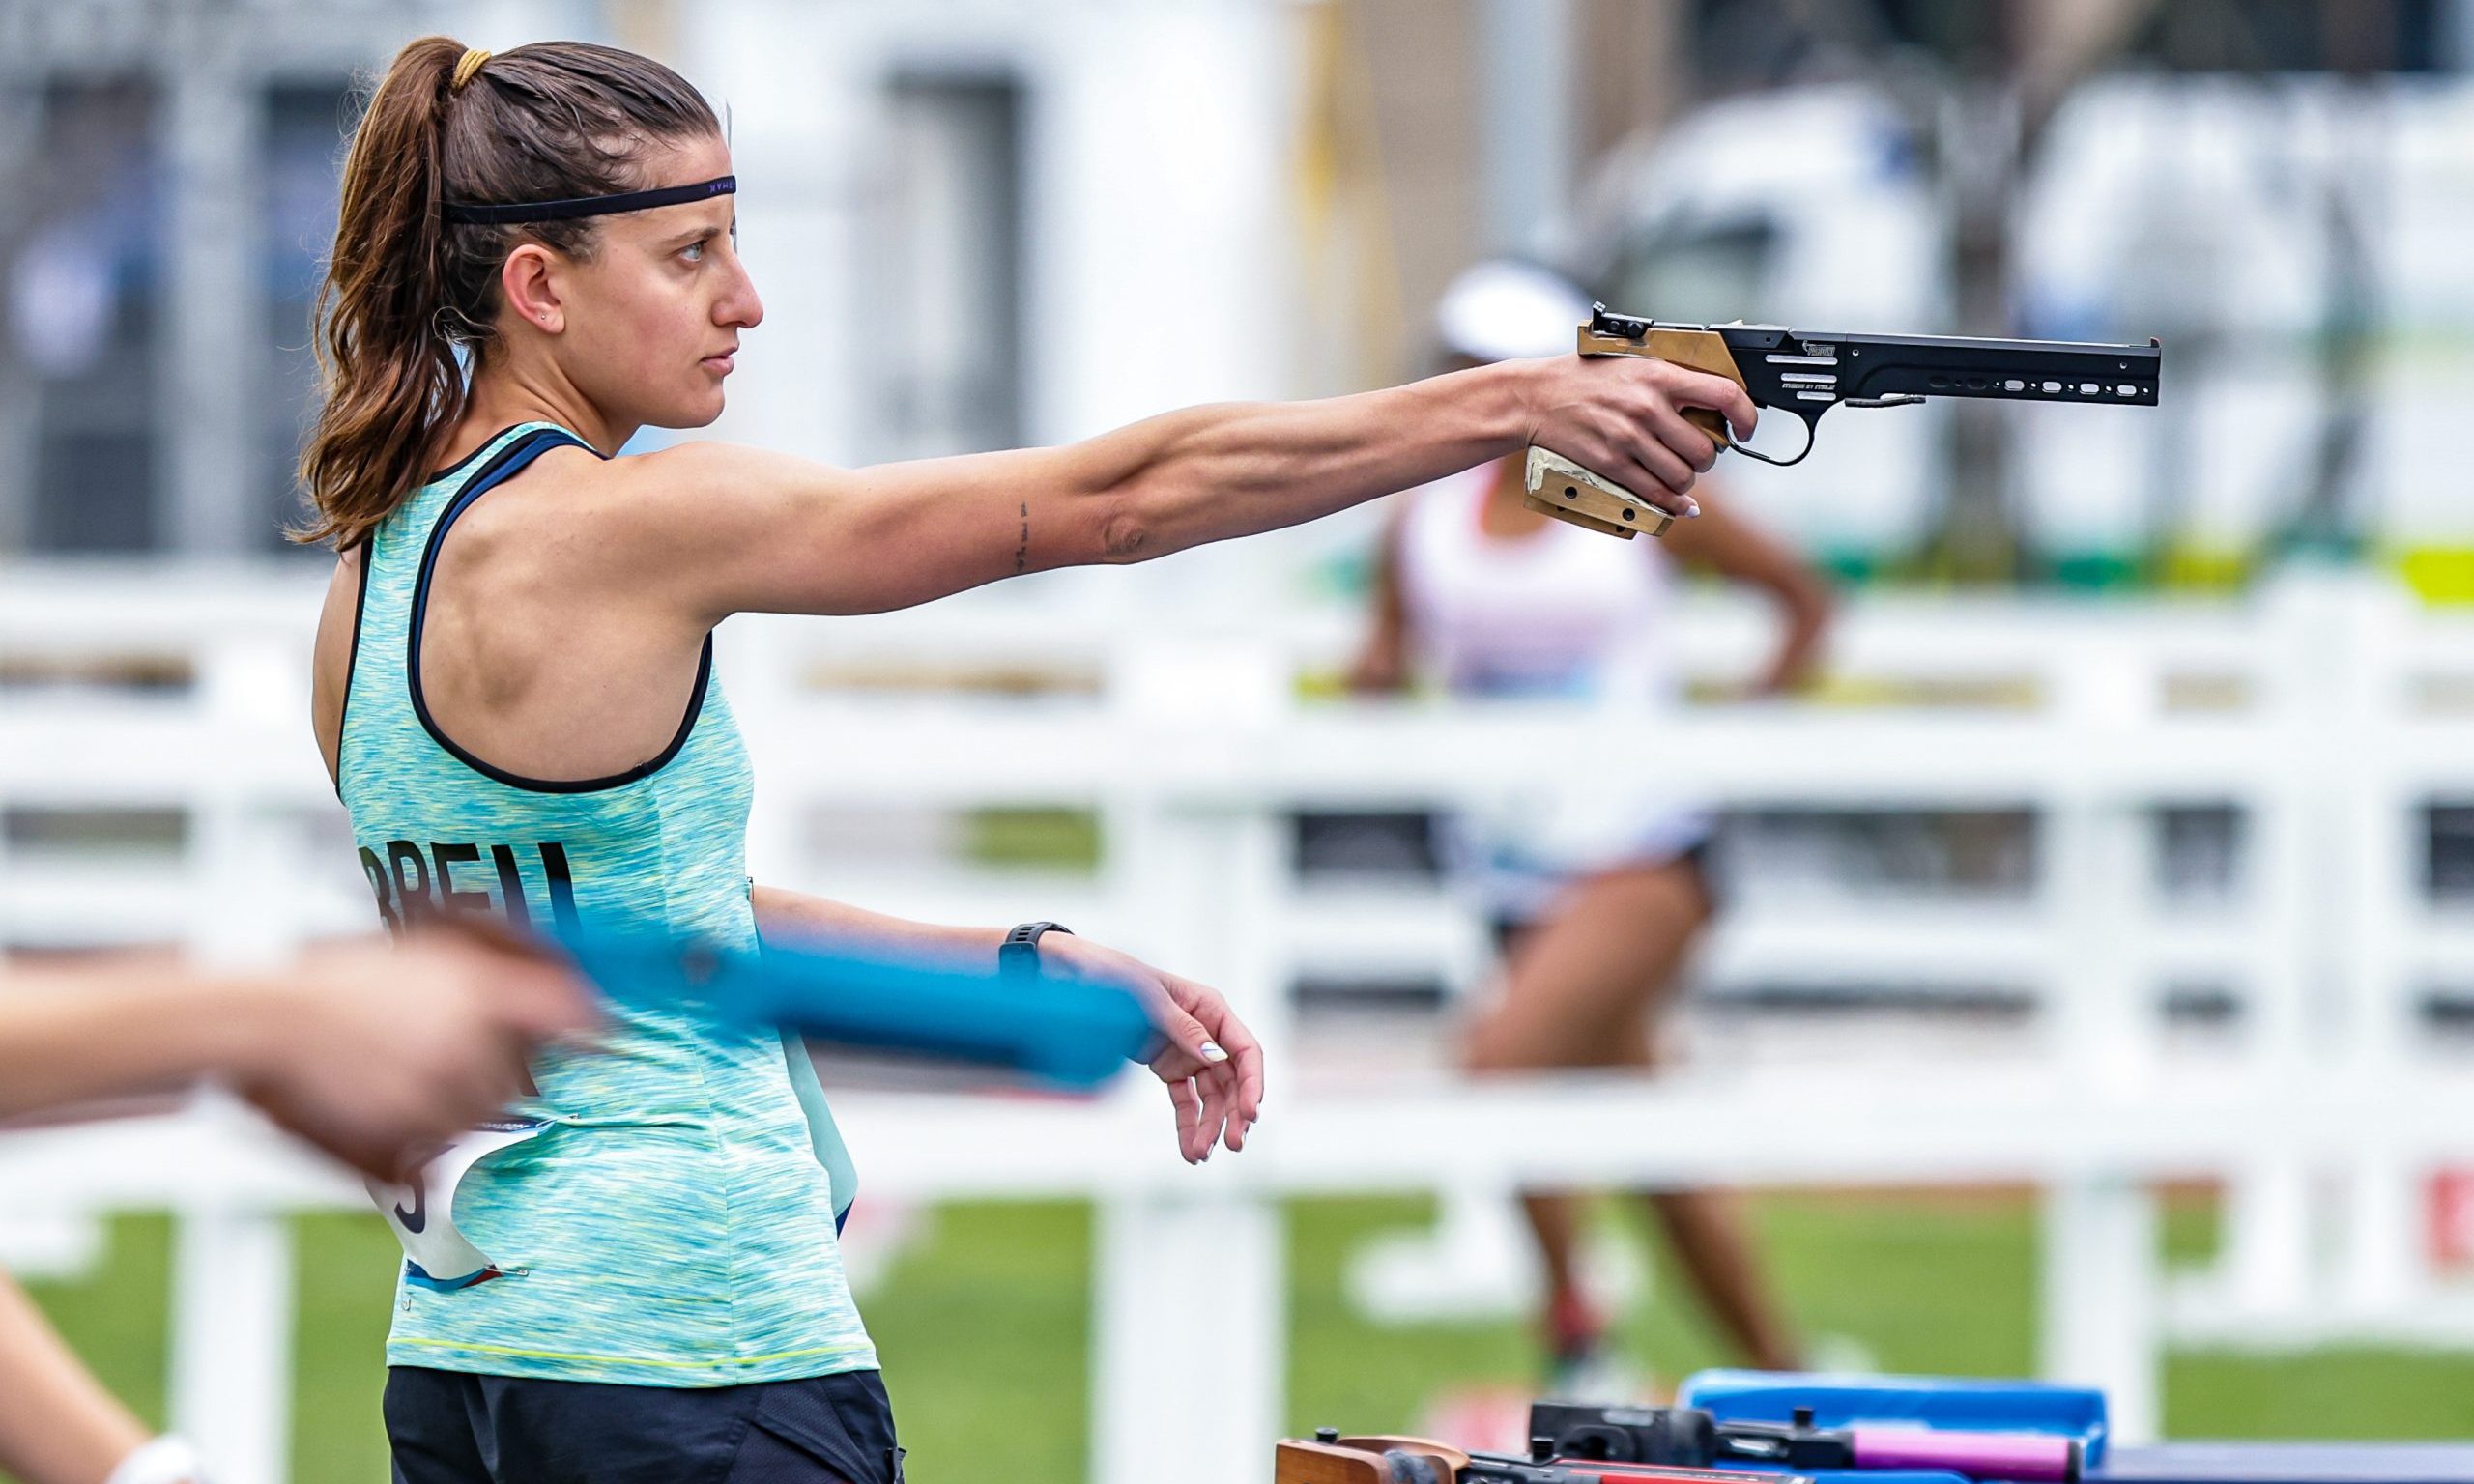 Isabela Abreu vaga olímpica santiago 2023 pentatlo moderno laser run tiro esportivo